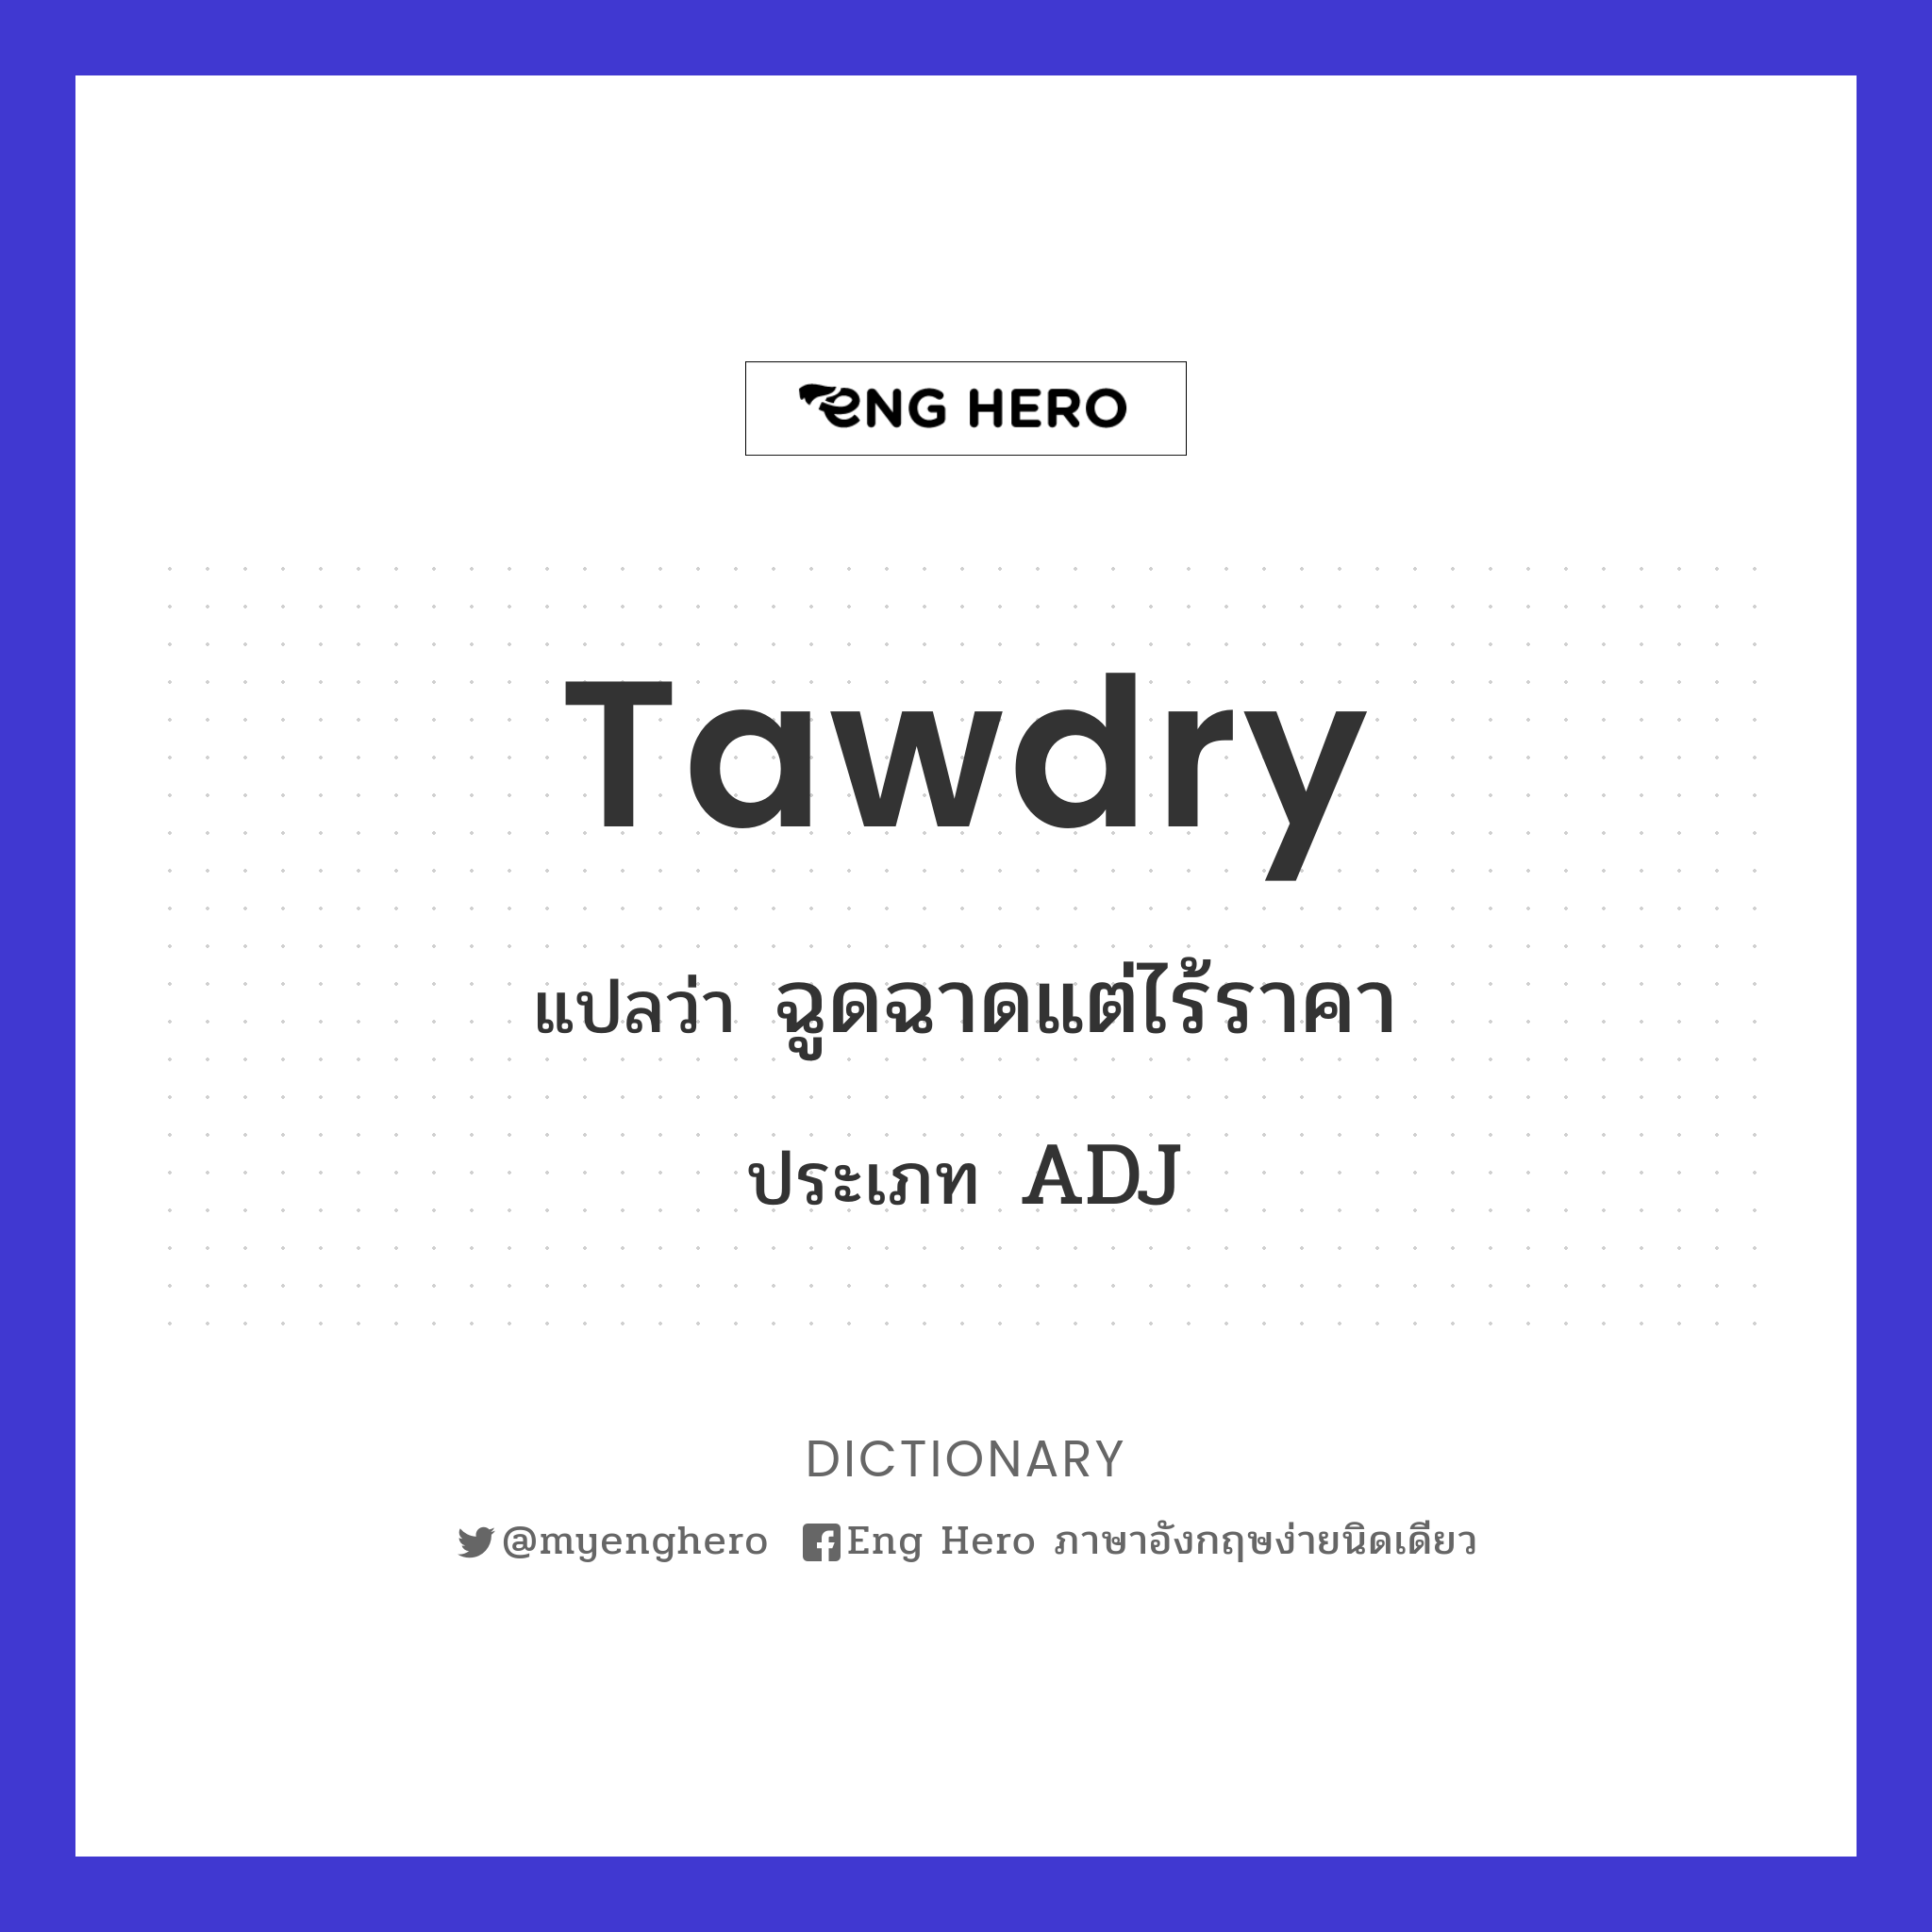 tawdry